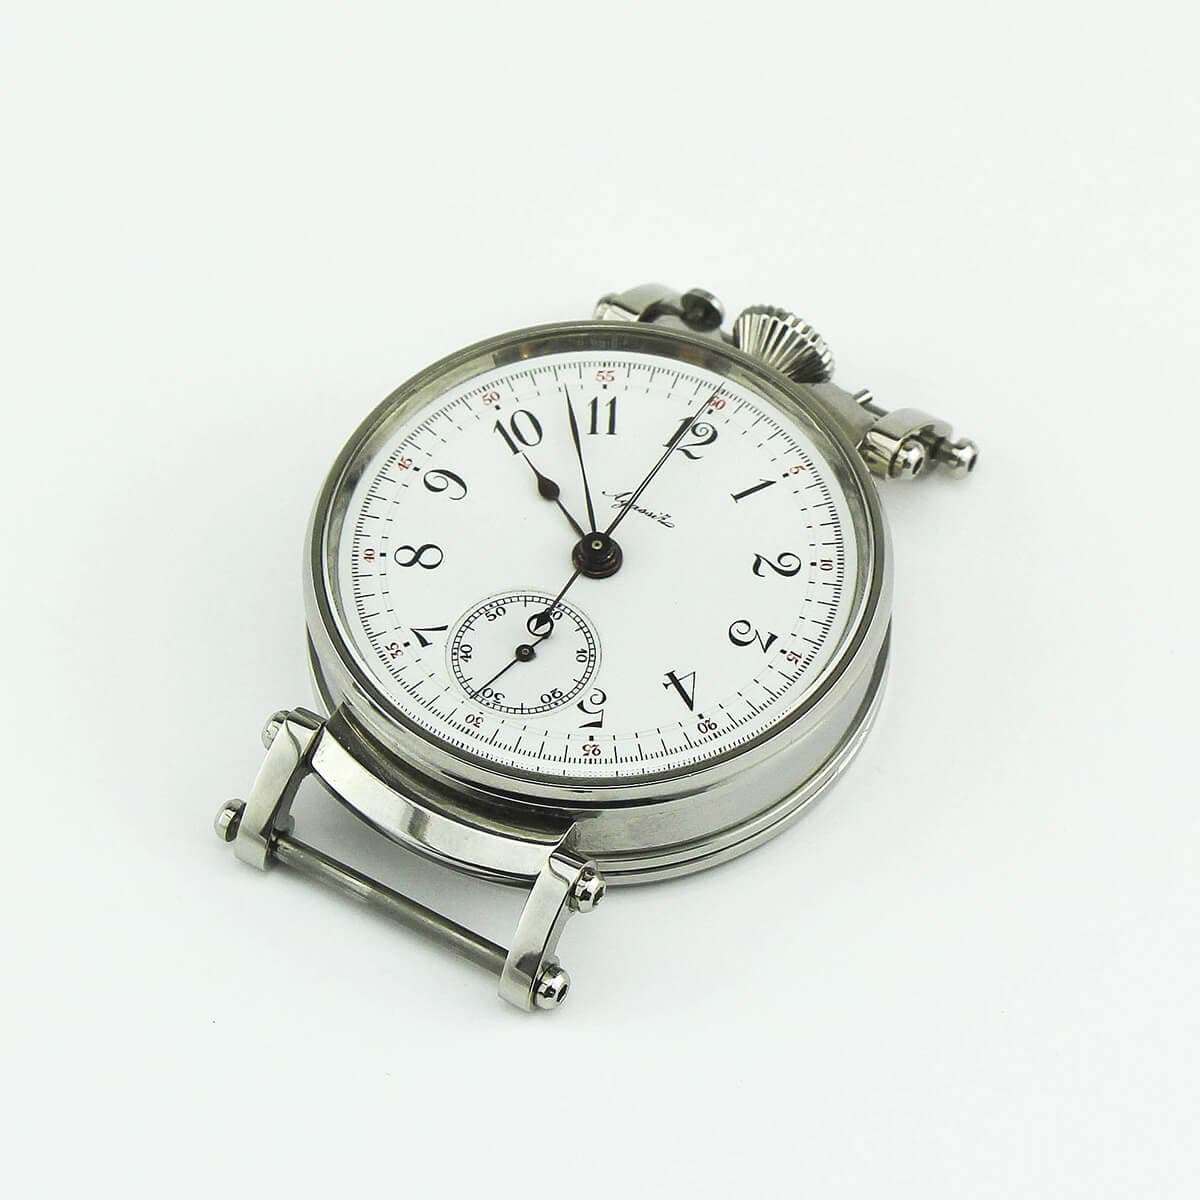 Наручные часы со сплит-хронографом Agassiz начала 20 века